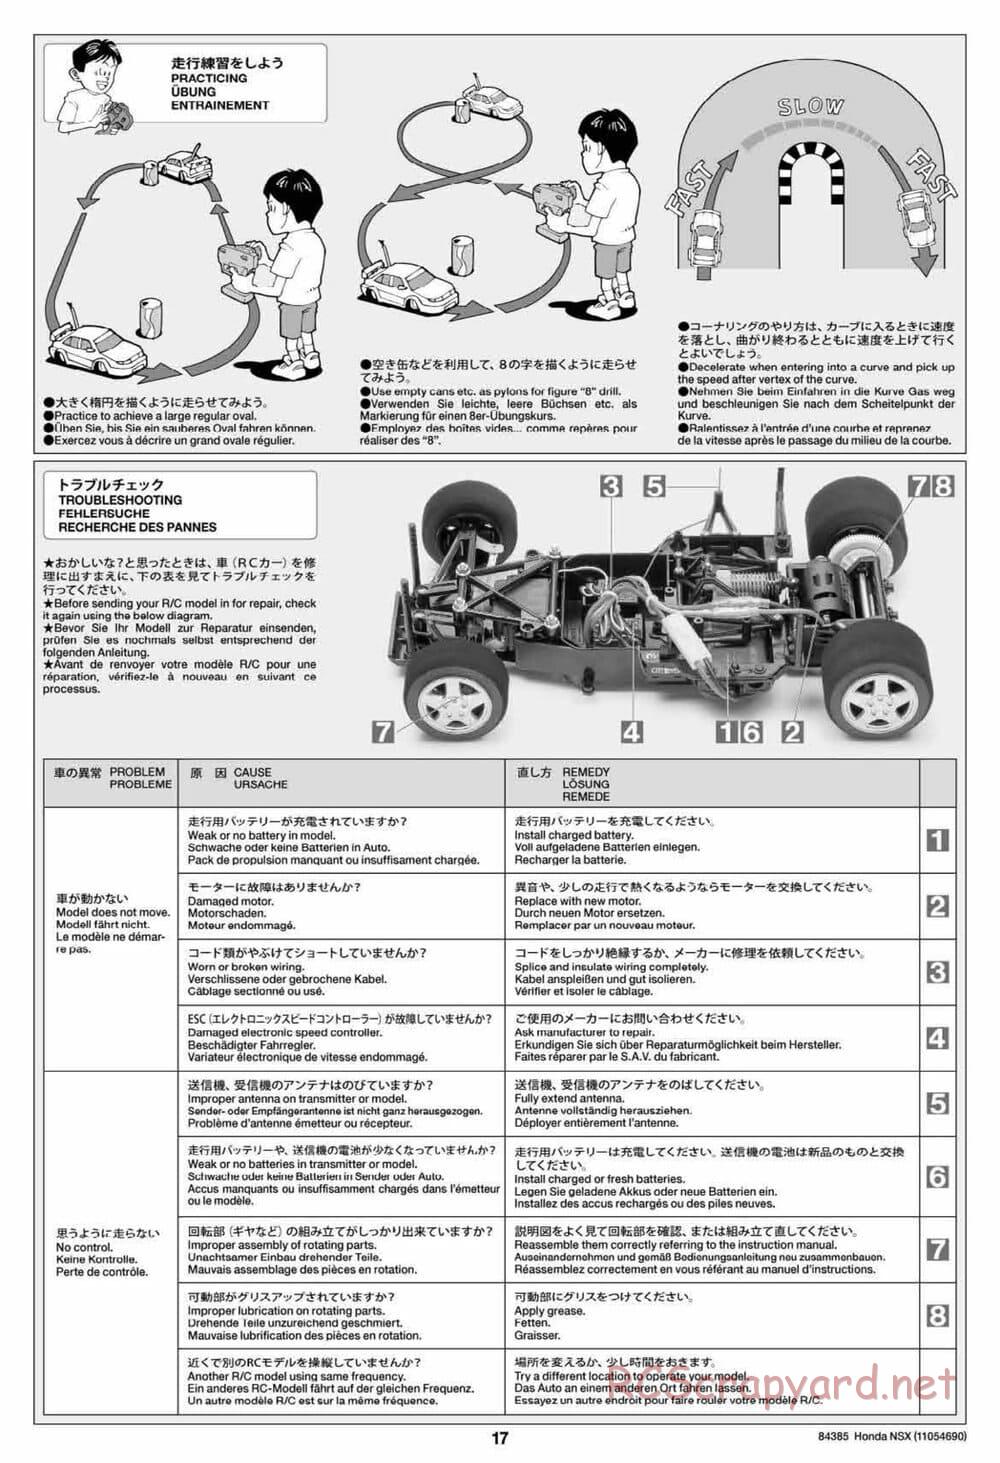 Tamiya - Honda NSX - Group-C Chassis - Manual - Page 17